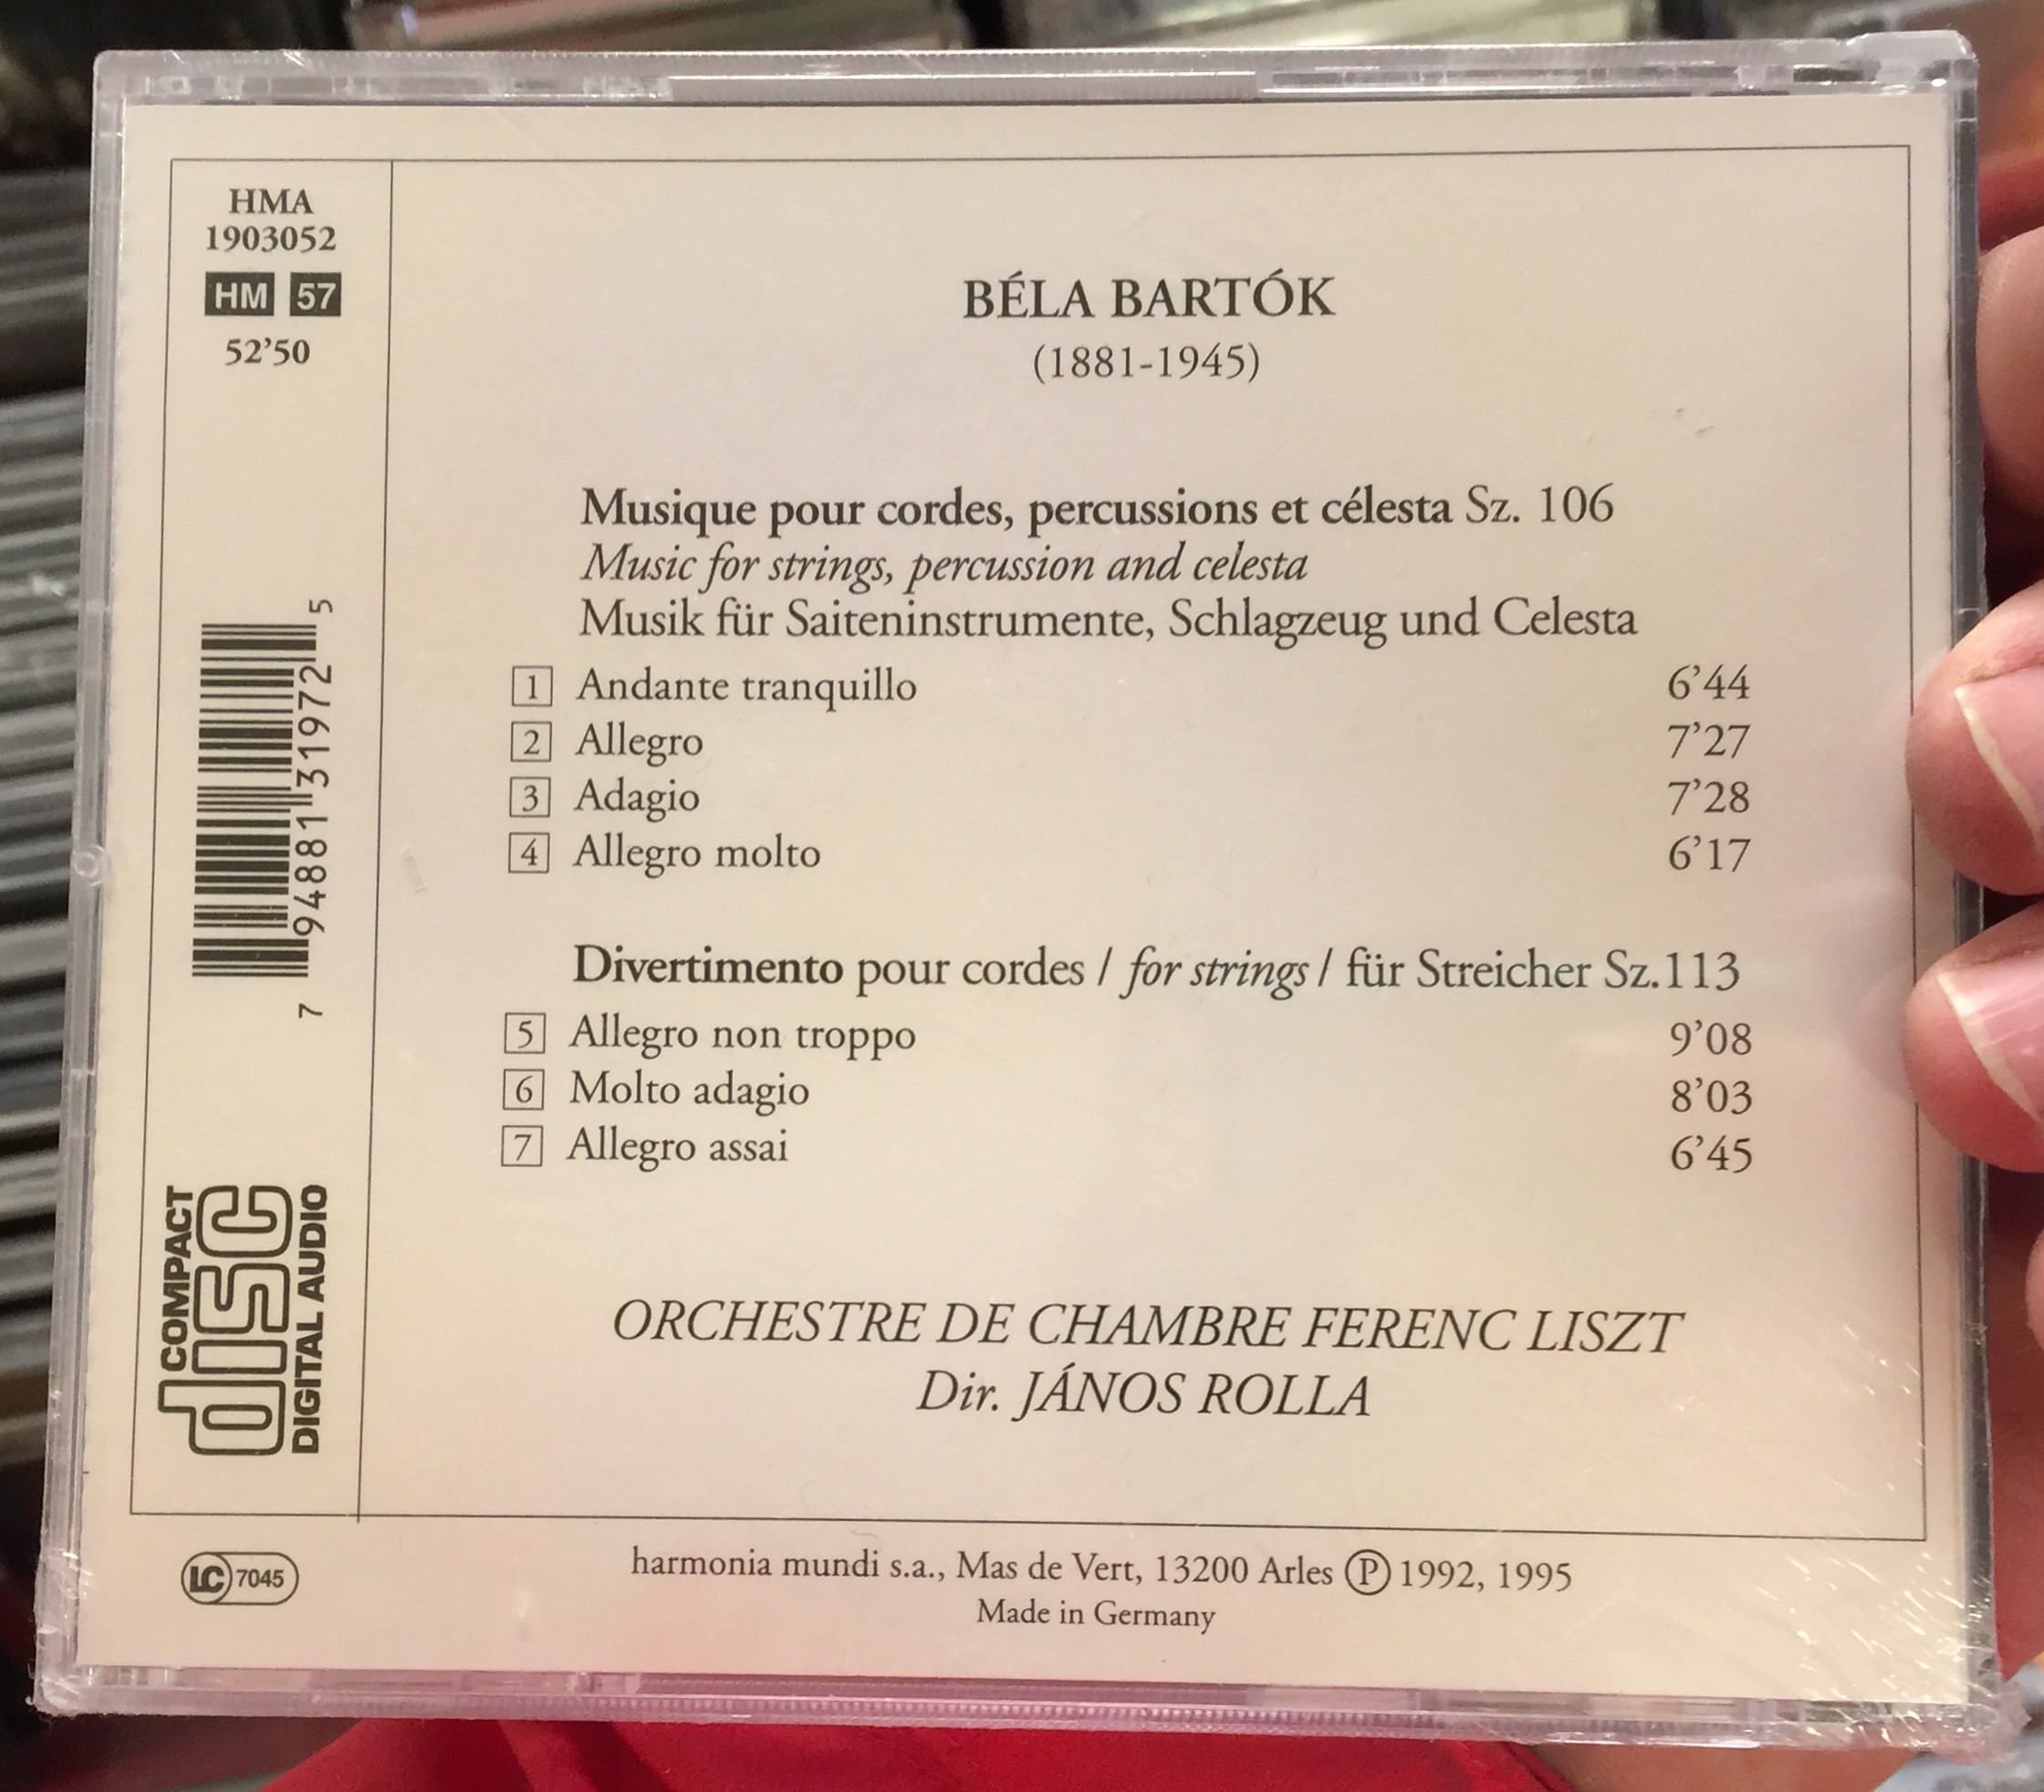 bart-k-musique-pour-cordes-percussions-c-lesta-orchestre-de-chambre-ferenc-liszt-j-nos-rolla-harmonia-mundi-audio-cd-1995-hma-1903052-2-.jpg